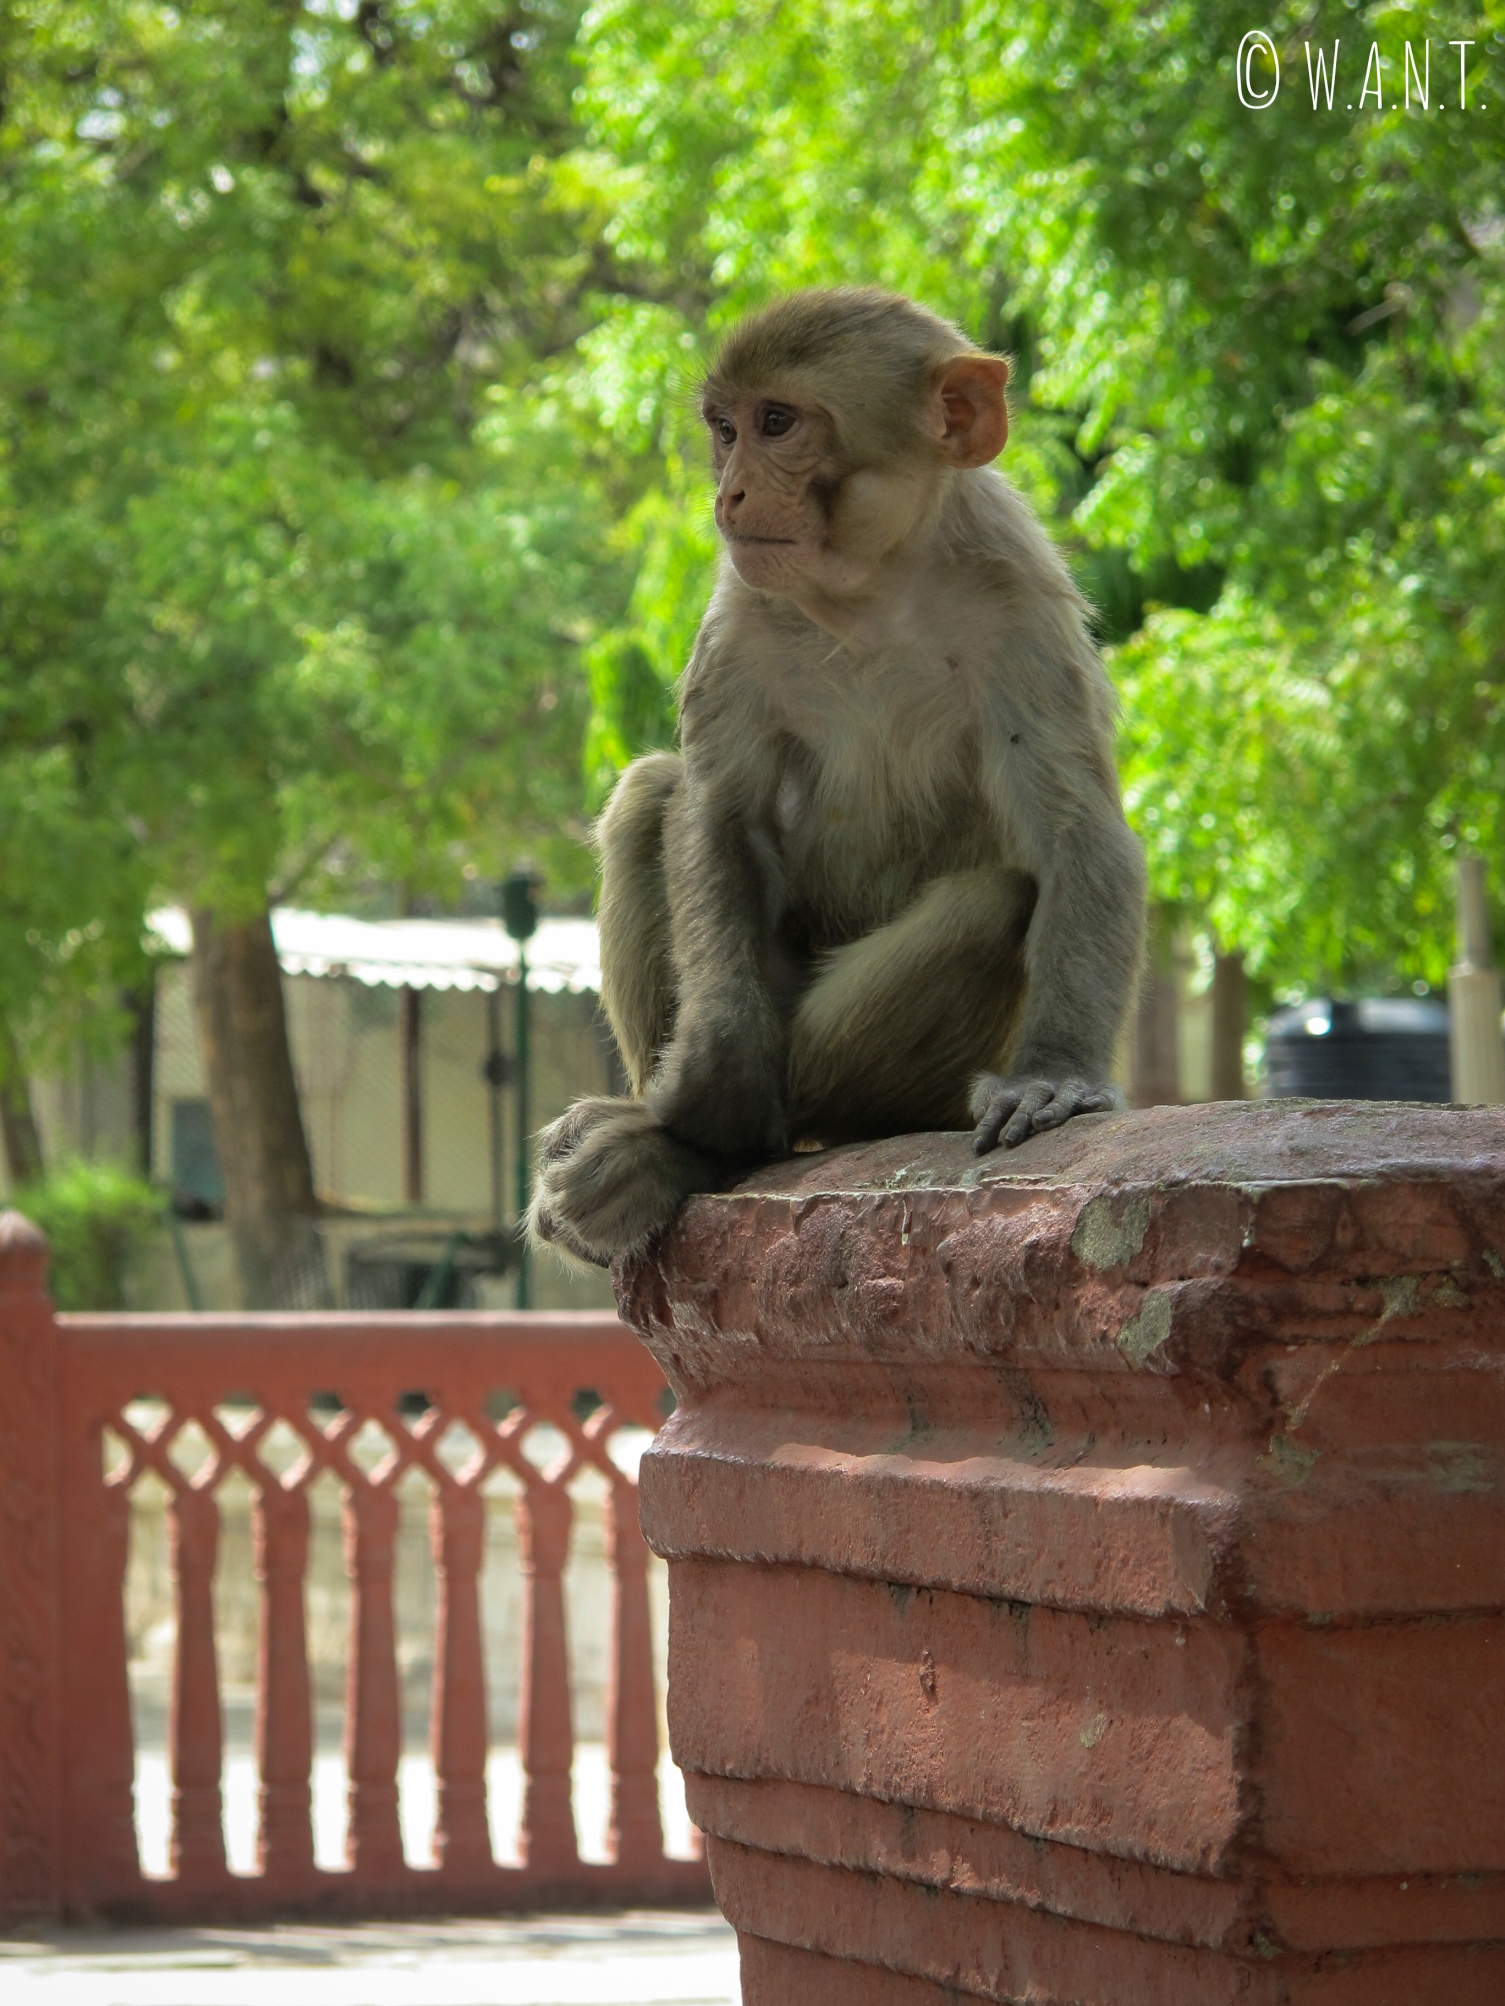 Les singes sont très nombreux dans le parc Jai Niwas, mais sont toutefois assez agressifs envers l'Homme